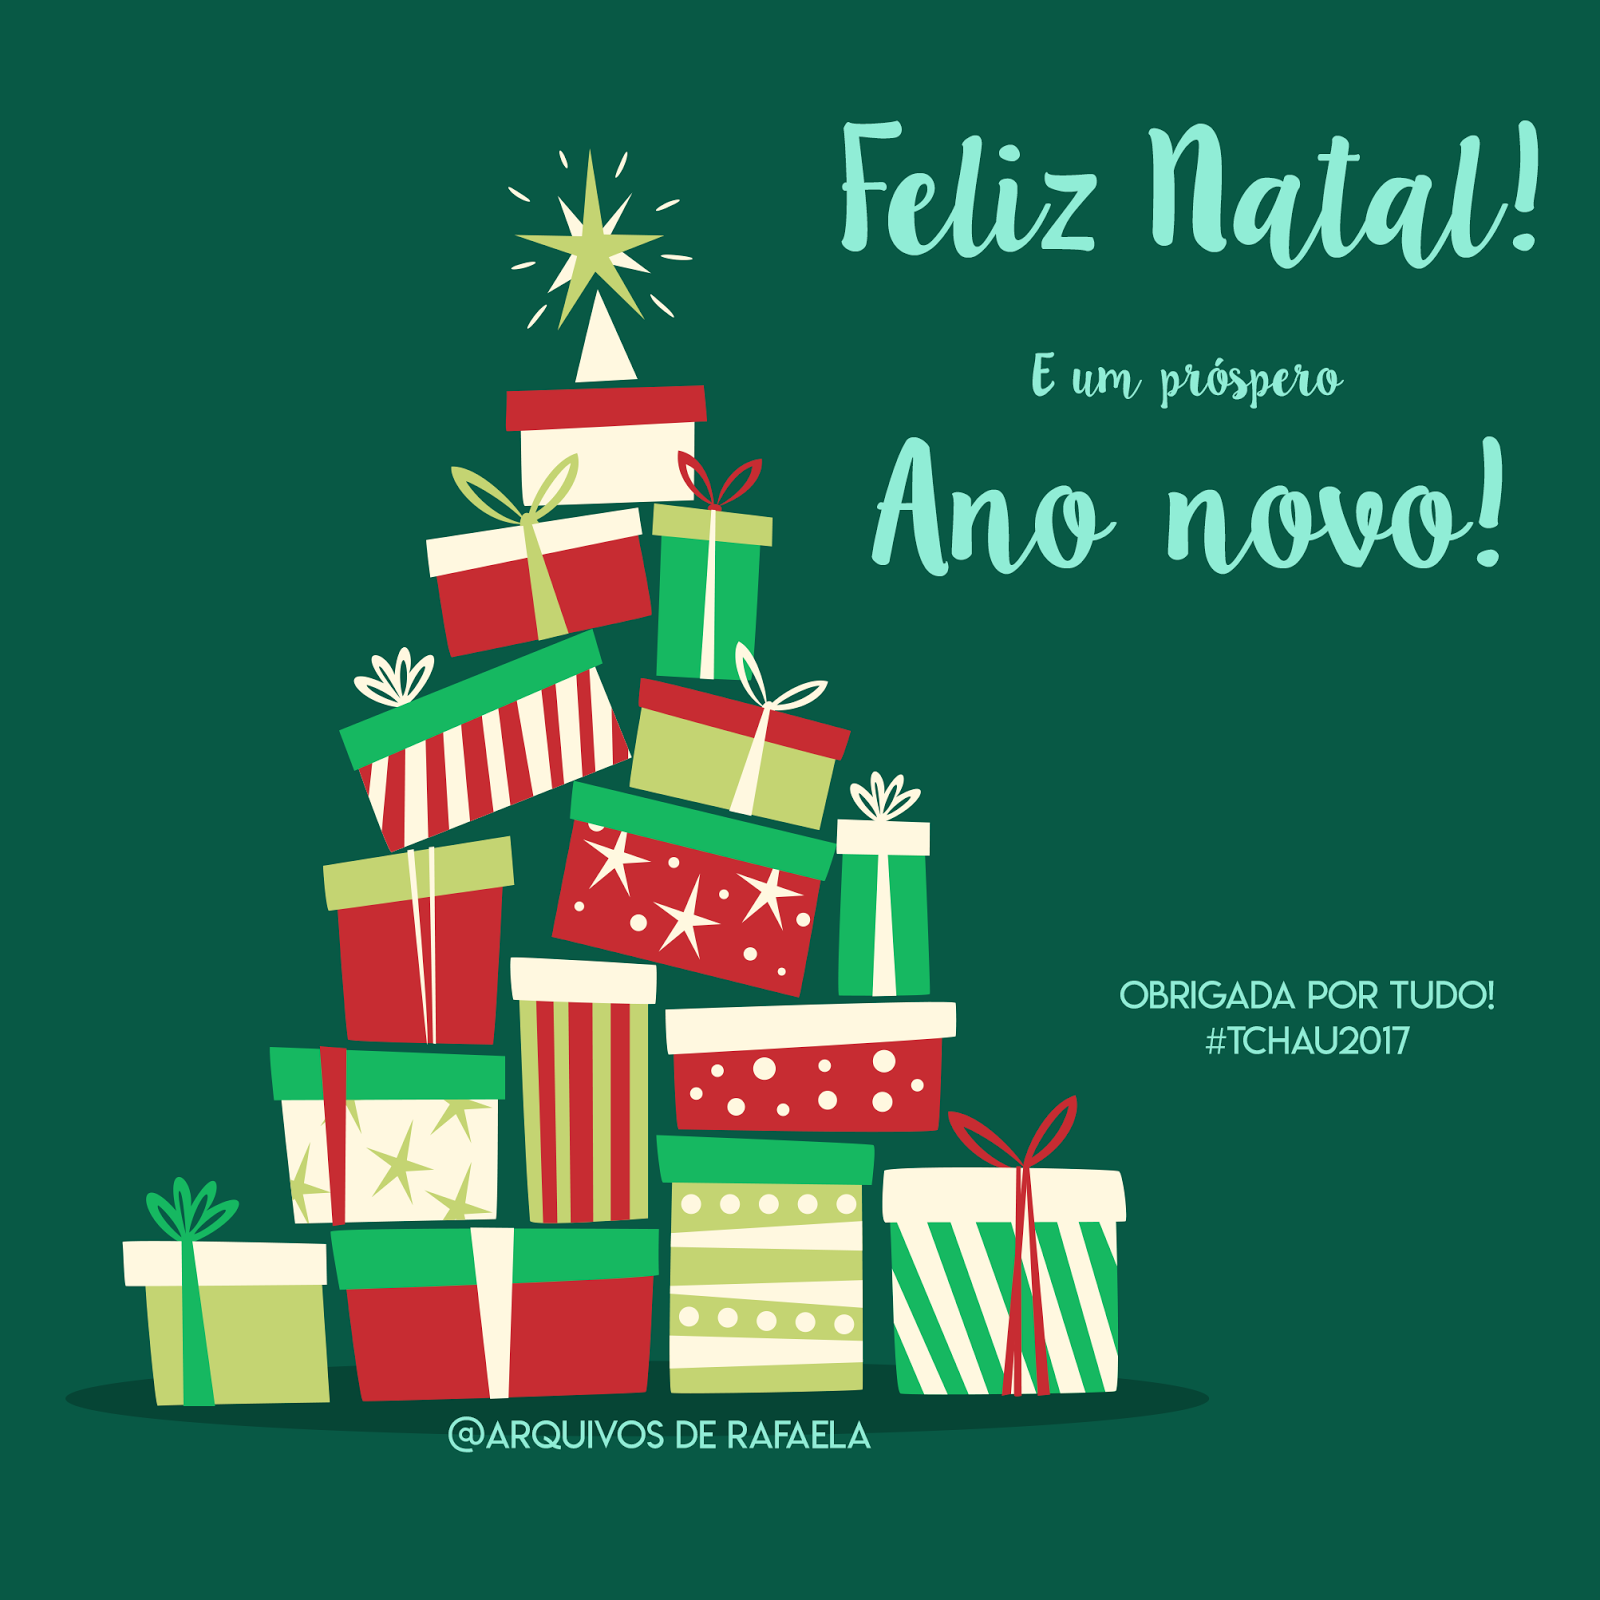 Feliz natal e um próspero Ano novo! #Tchau2017 Arquivos de Rafaela.